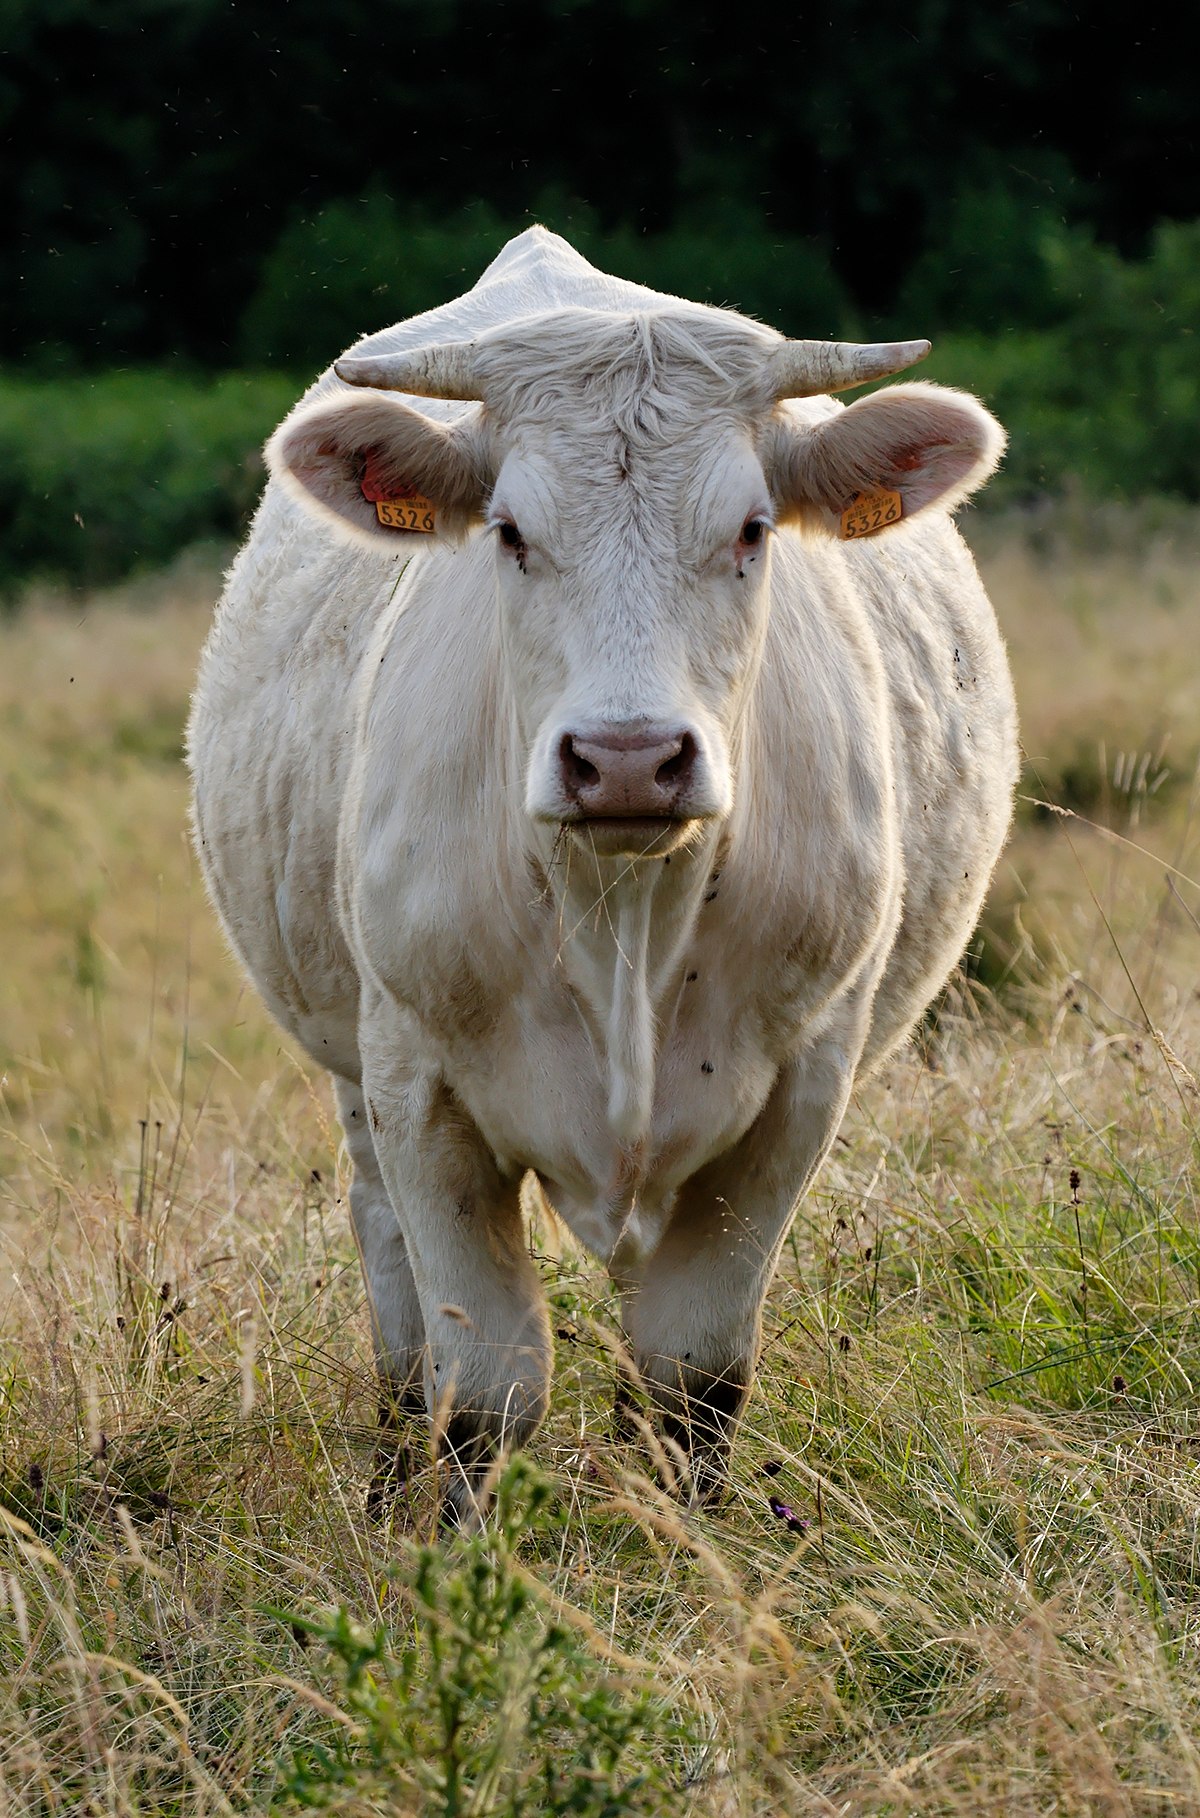 Văn hóa con bò đa dạng và phong phú, từ hình ảnh bò sữa trong chầu văn cho đến cuộc thi đua bò của các nước. Hãy cùng khám phá văn hóa con bò bằng hình ảnh liên quan để hiểu thêm về những truyền thống và phong tục tại các nơi khác nhau!